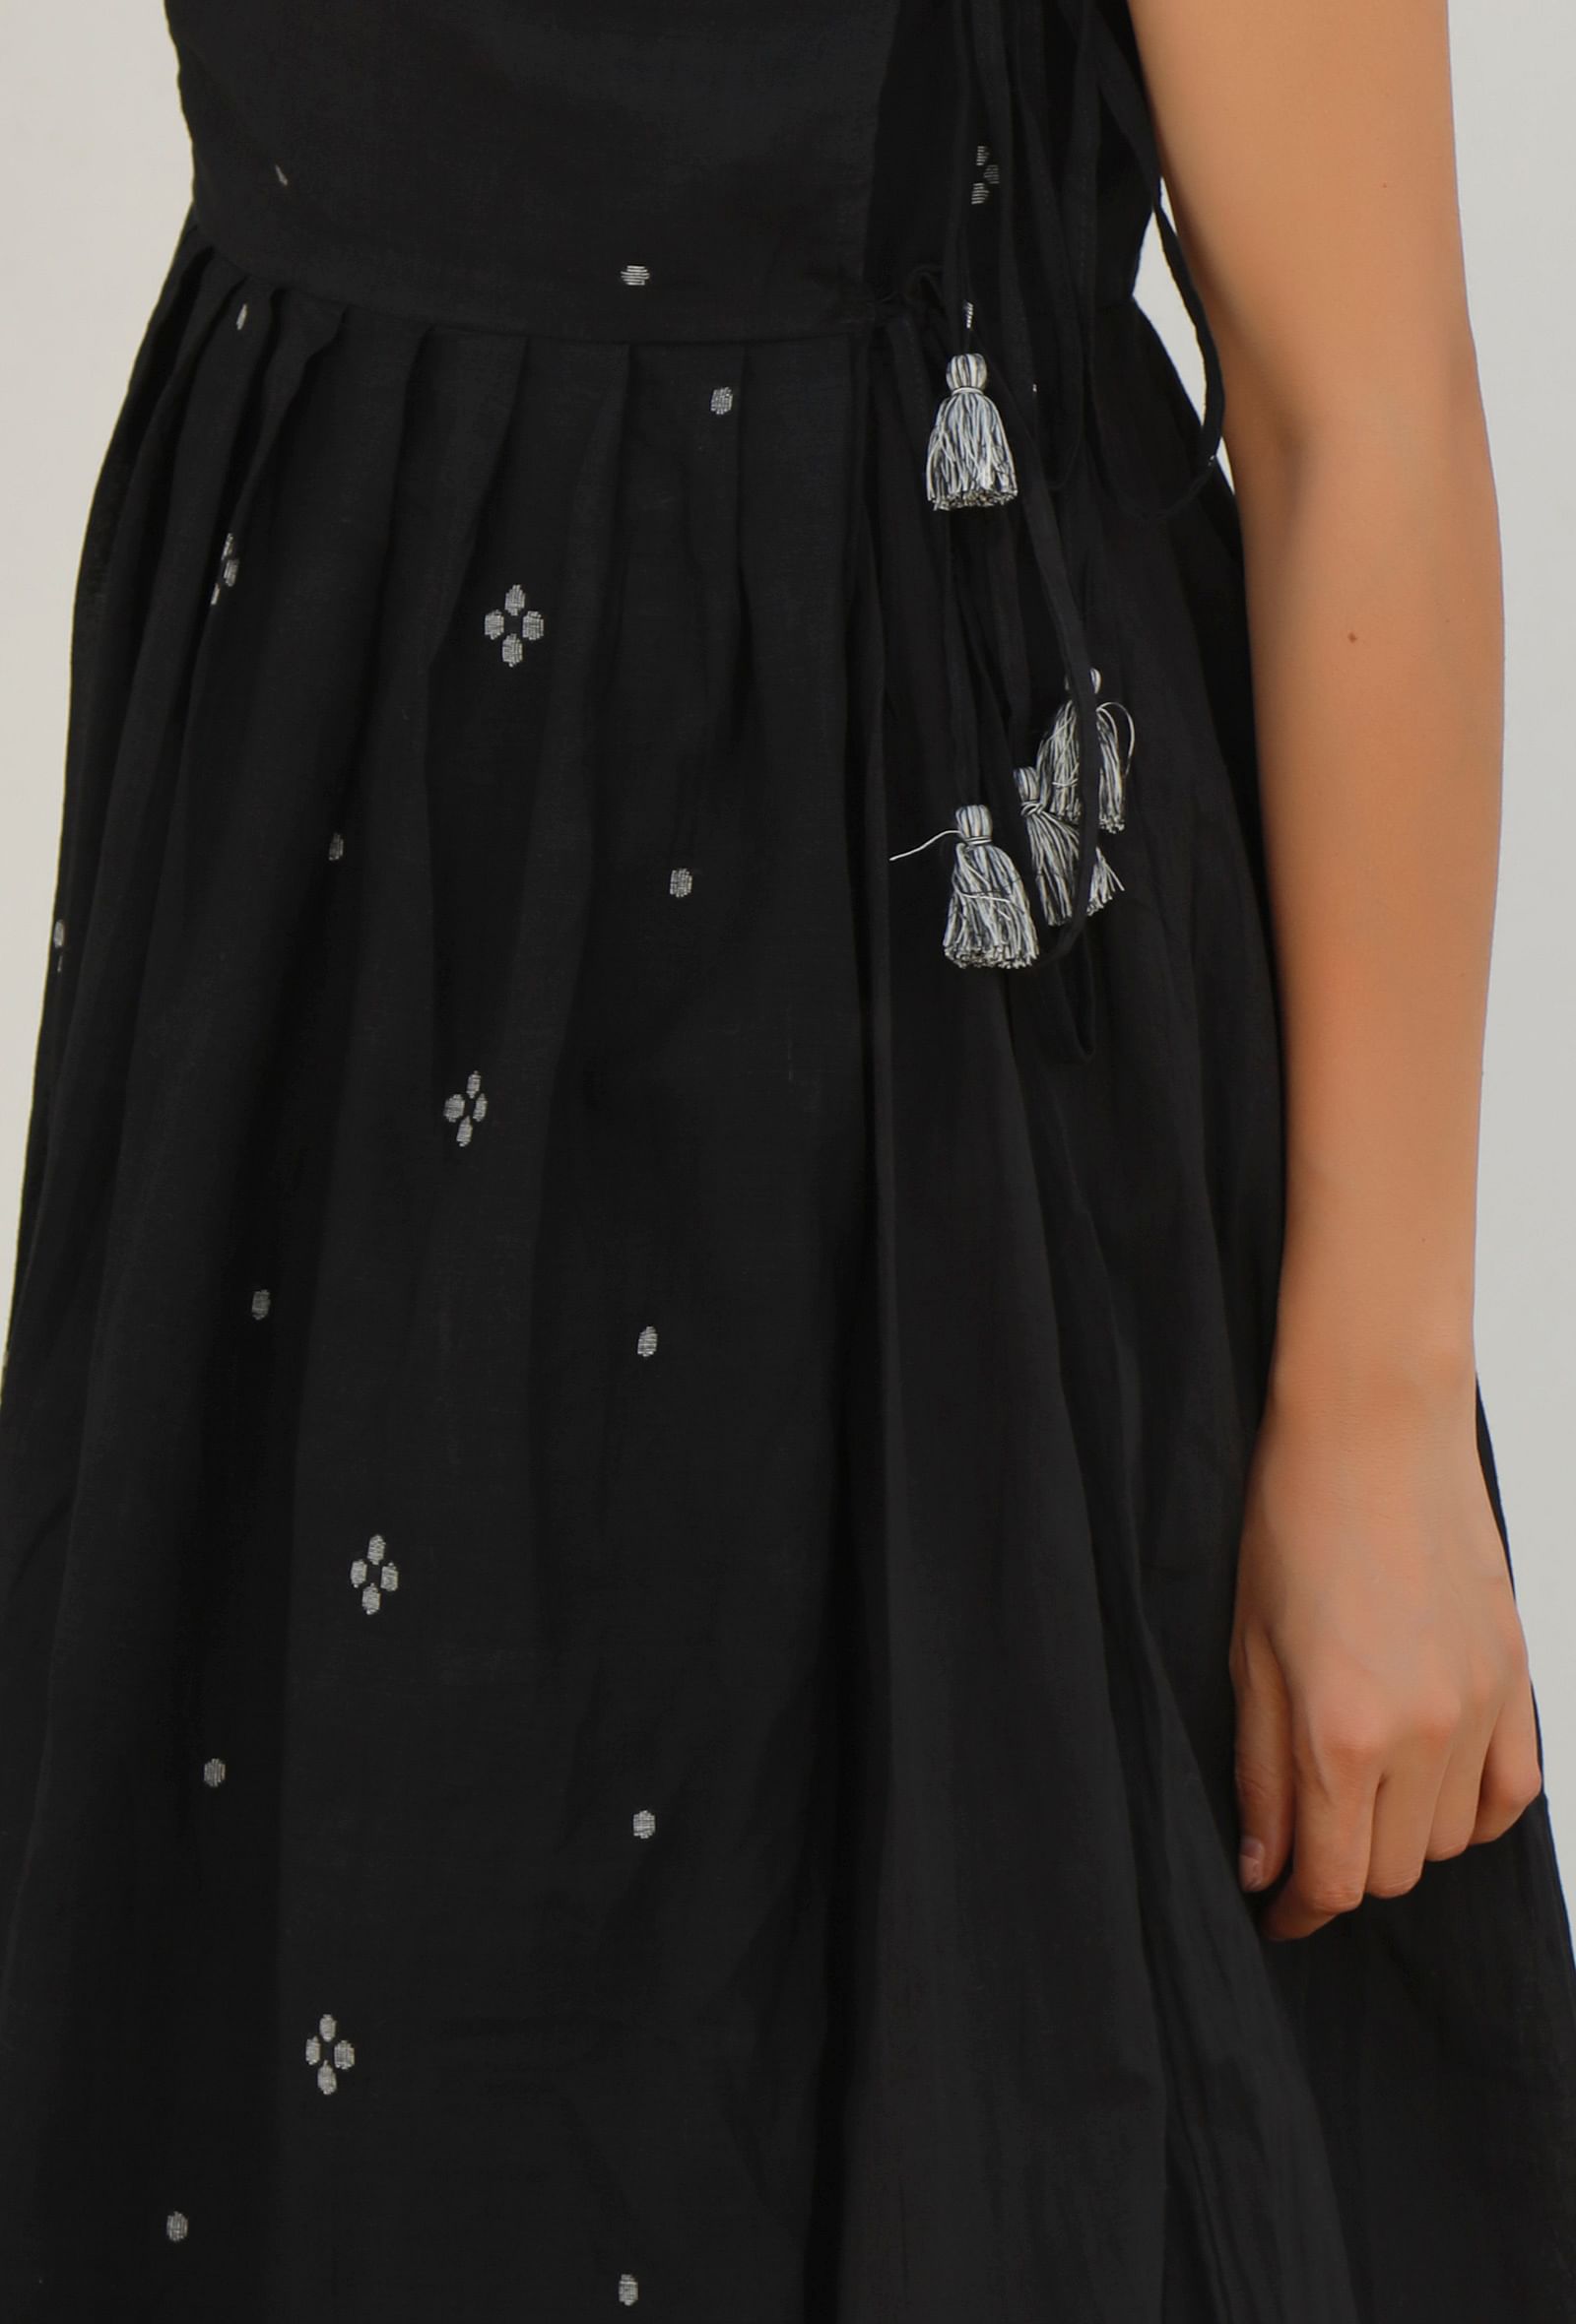 Black Jamdani Mulmul Asymmetrical Angrakha Kurta Dress